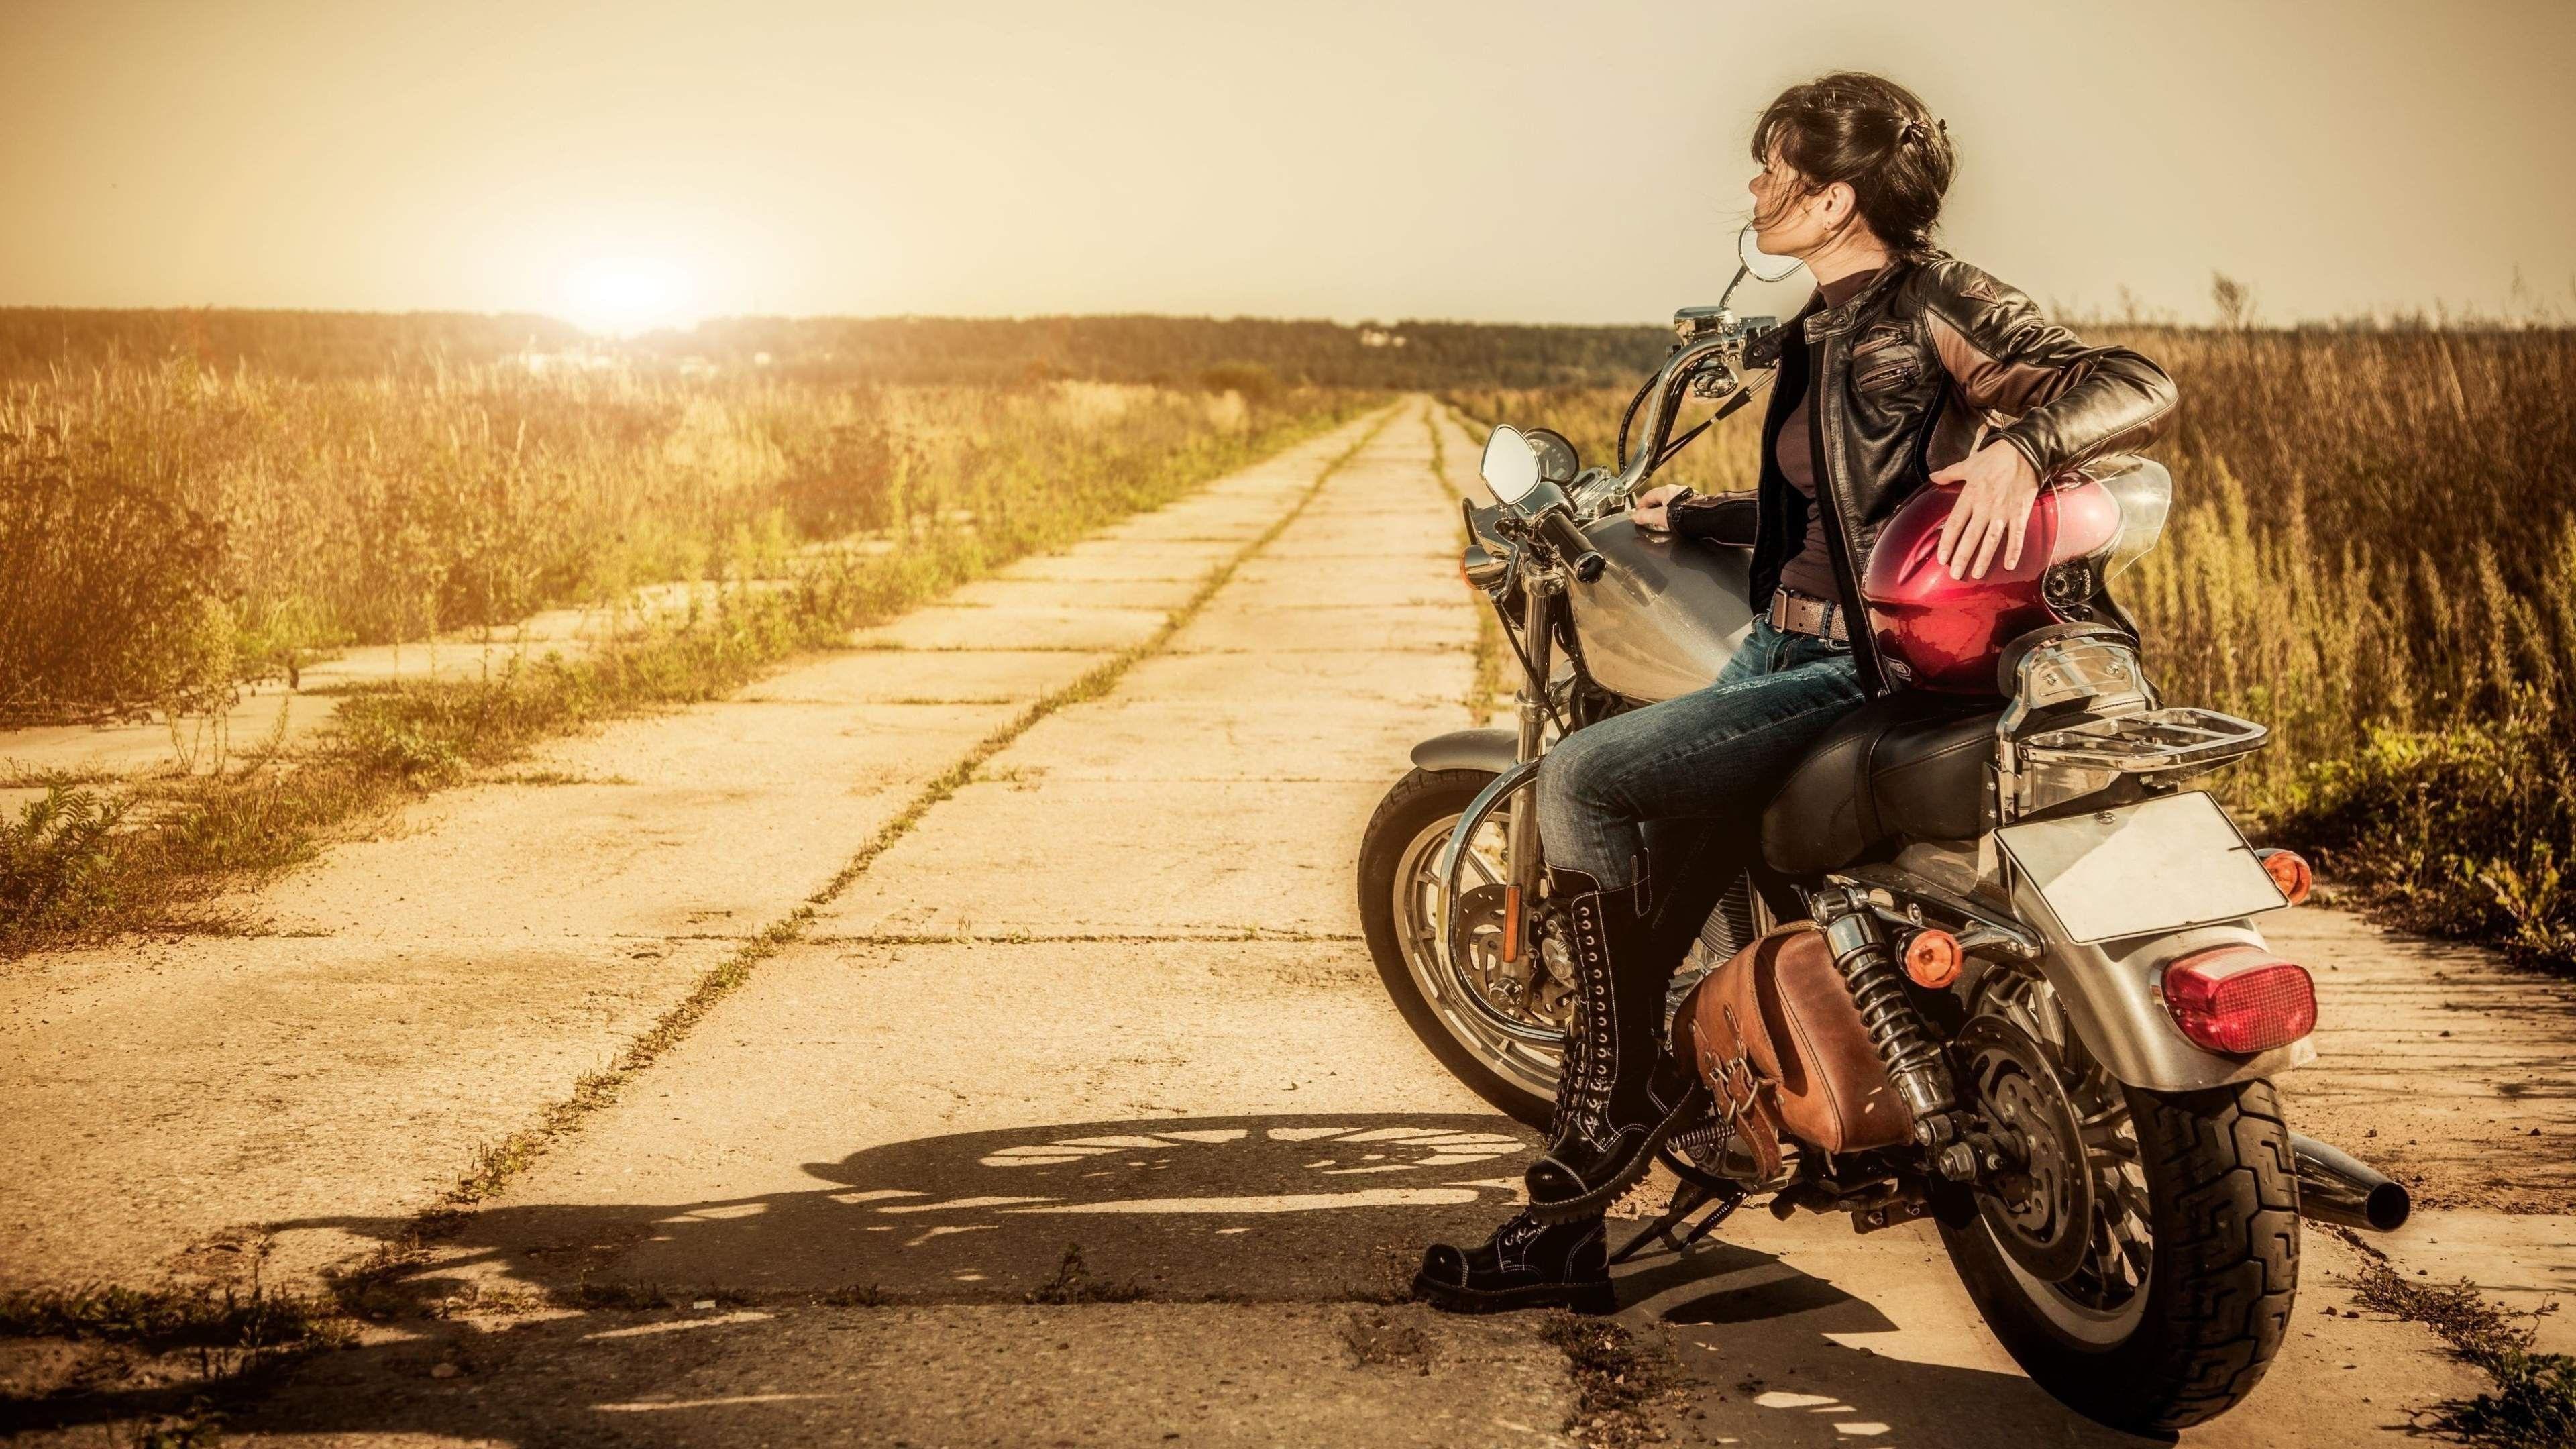 biker girl 4k ultra HD wallpaper. Biker girl, Motorcycle women, Female motorcycle riders